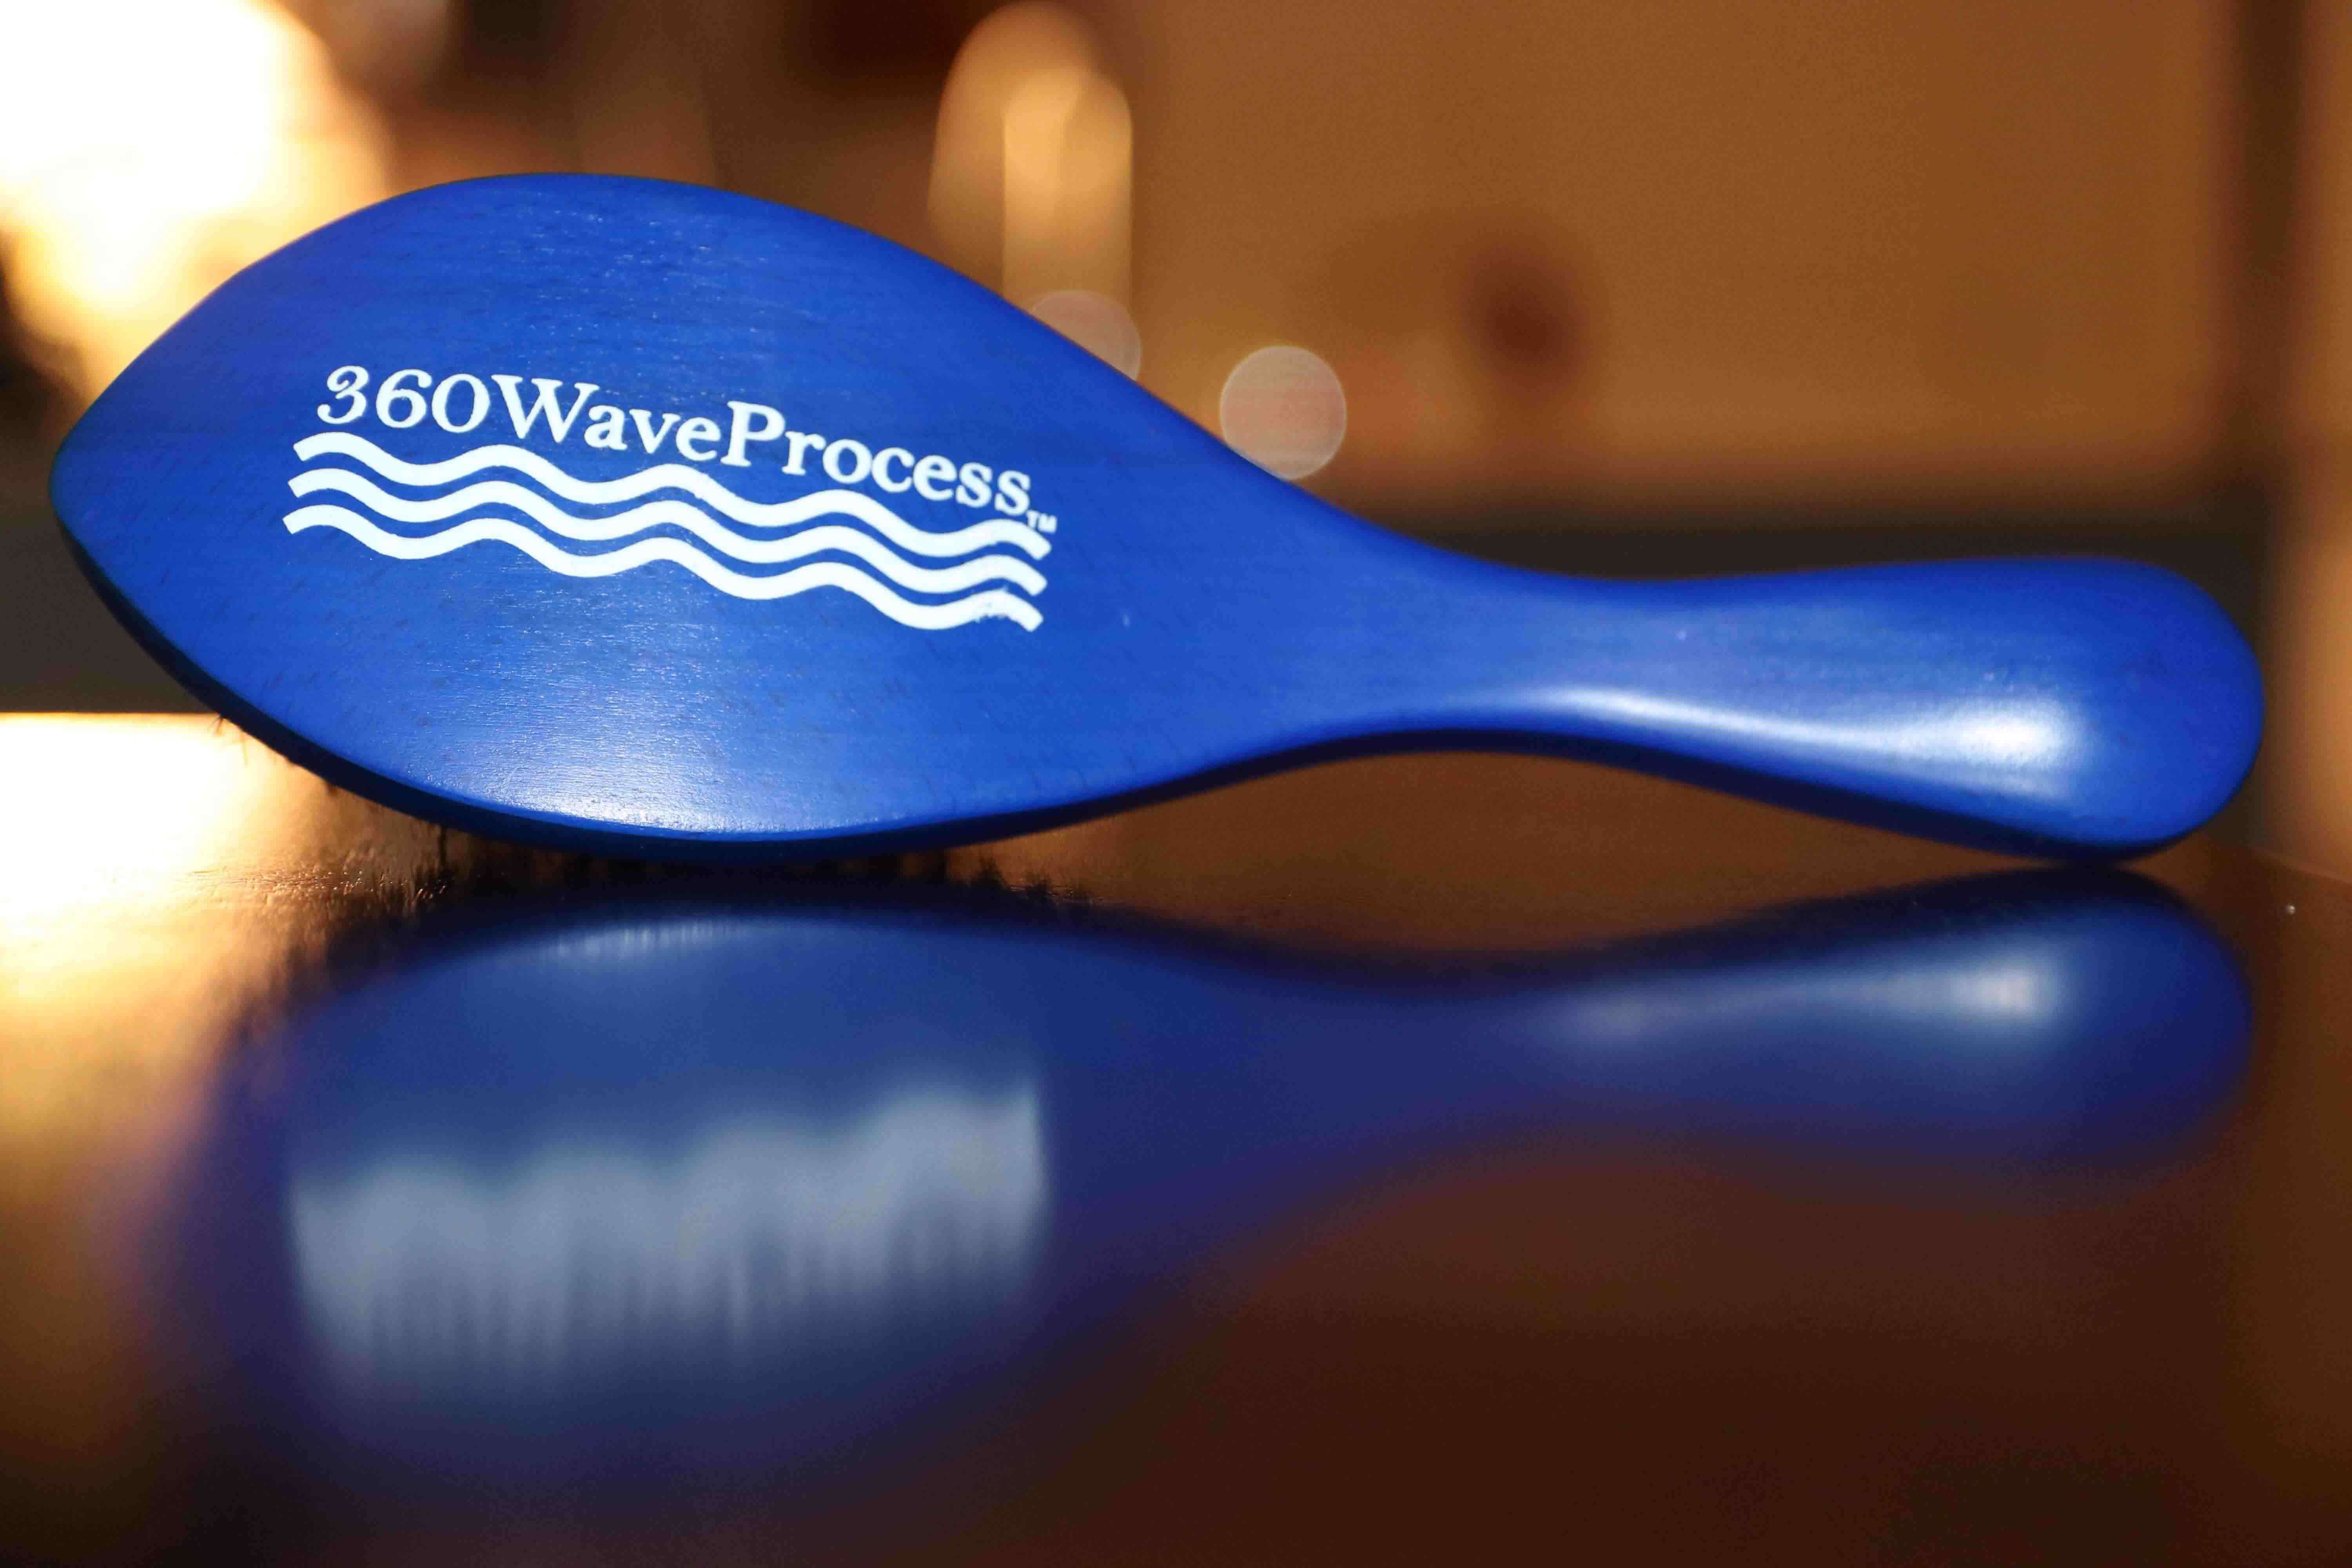 3WP wave brush blue handle